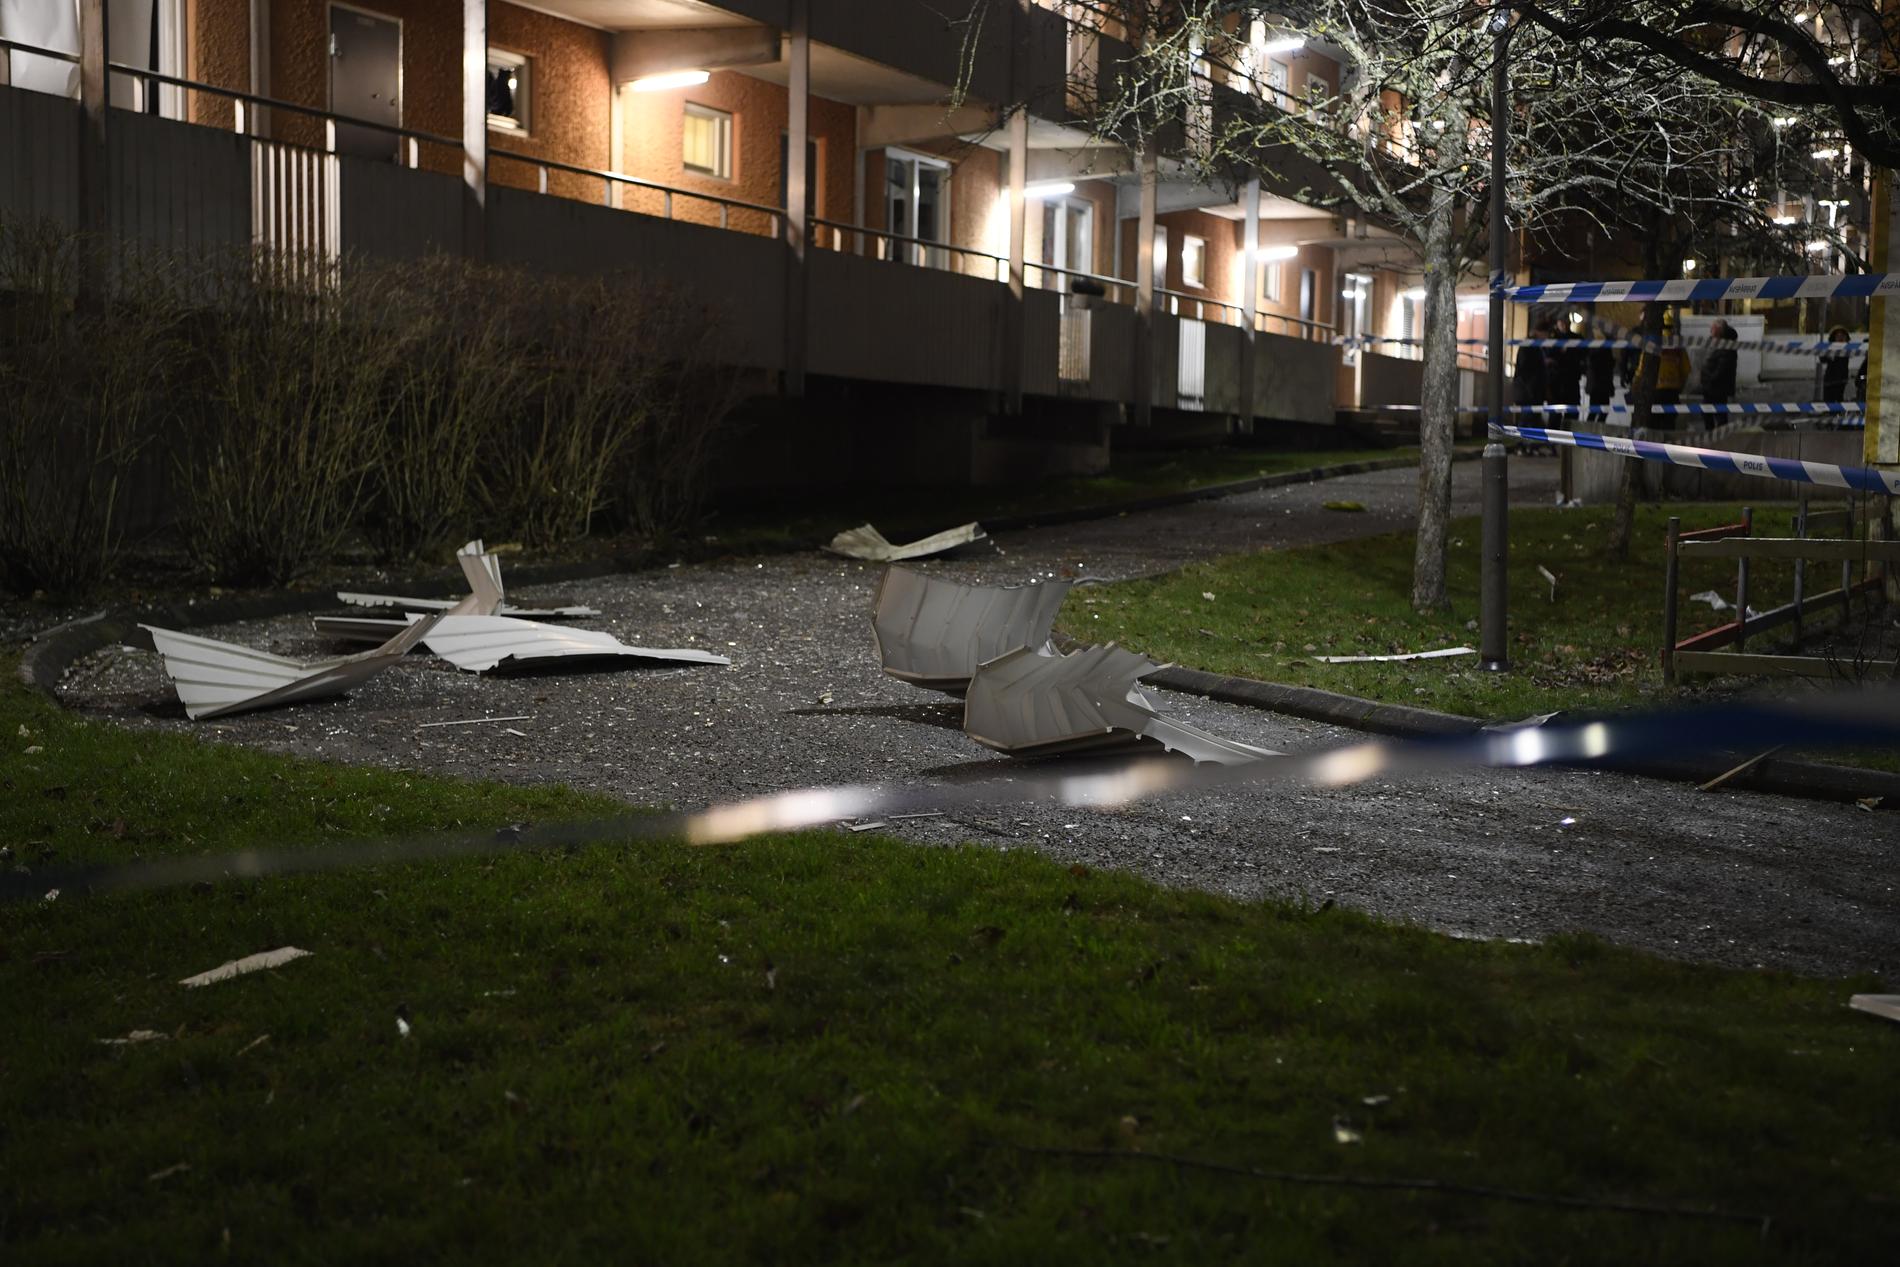 Boende i Husby vaknade av explosionen i Kista. Minuter senare small det även i deras bostadsområde. Bilden är tagen vid explosionen i Kista. 